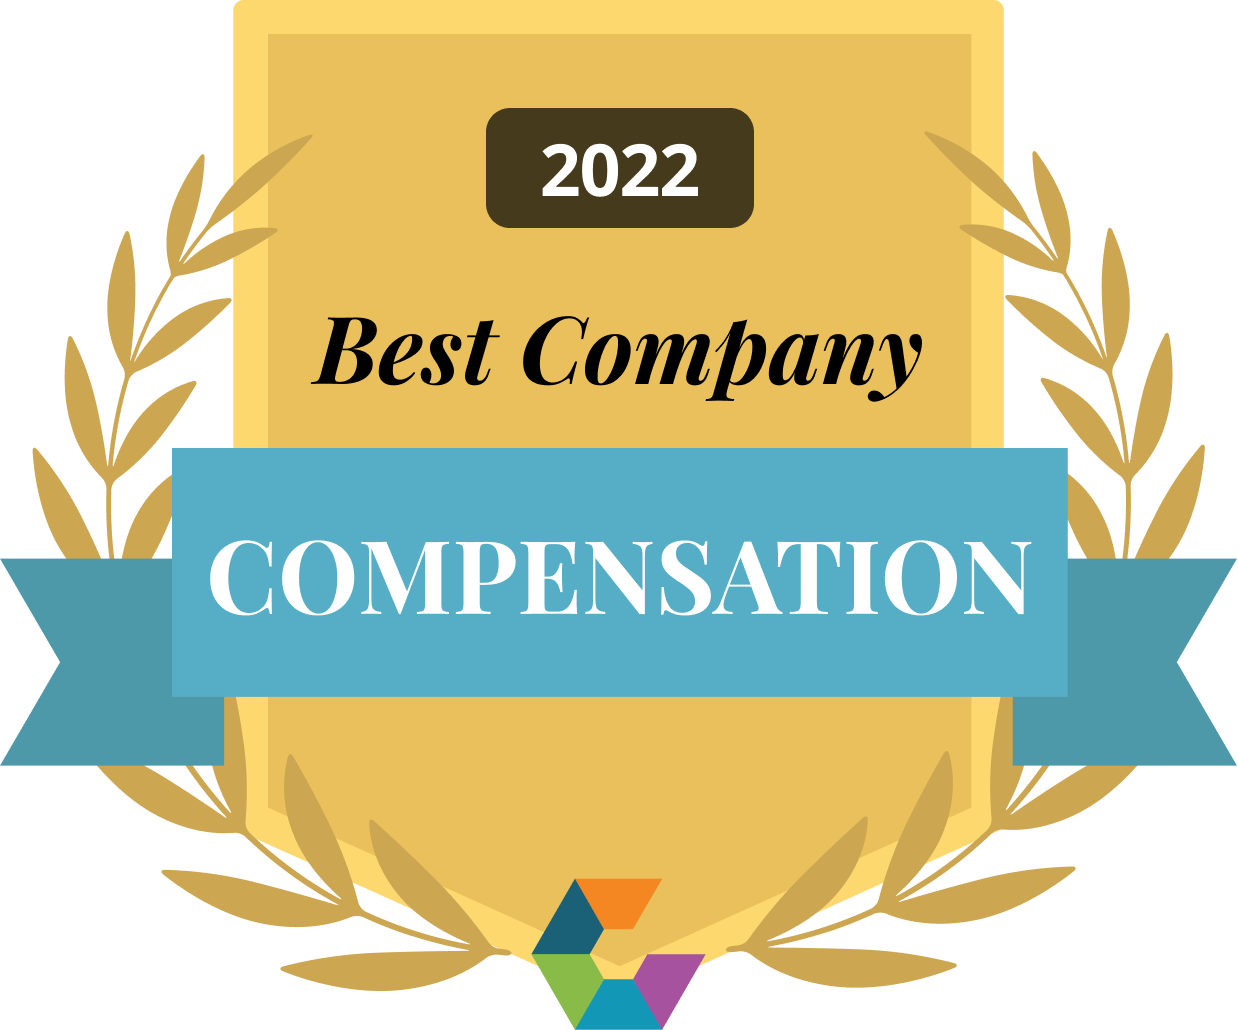 compensation-2022-large